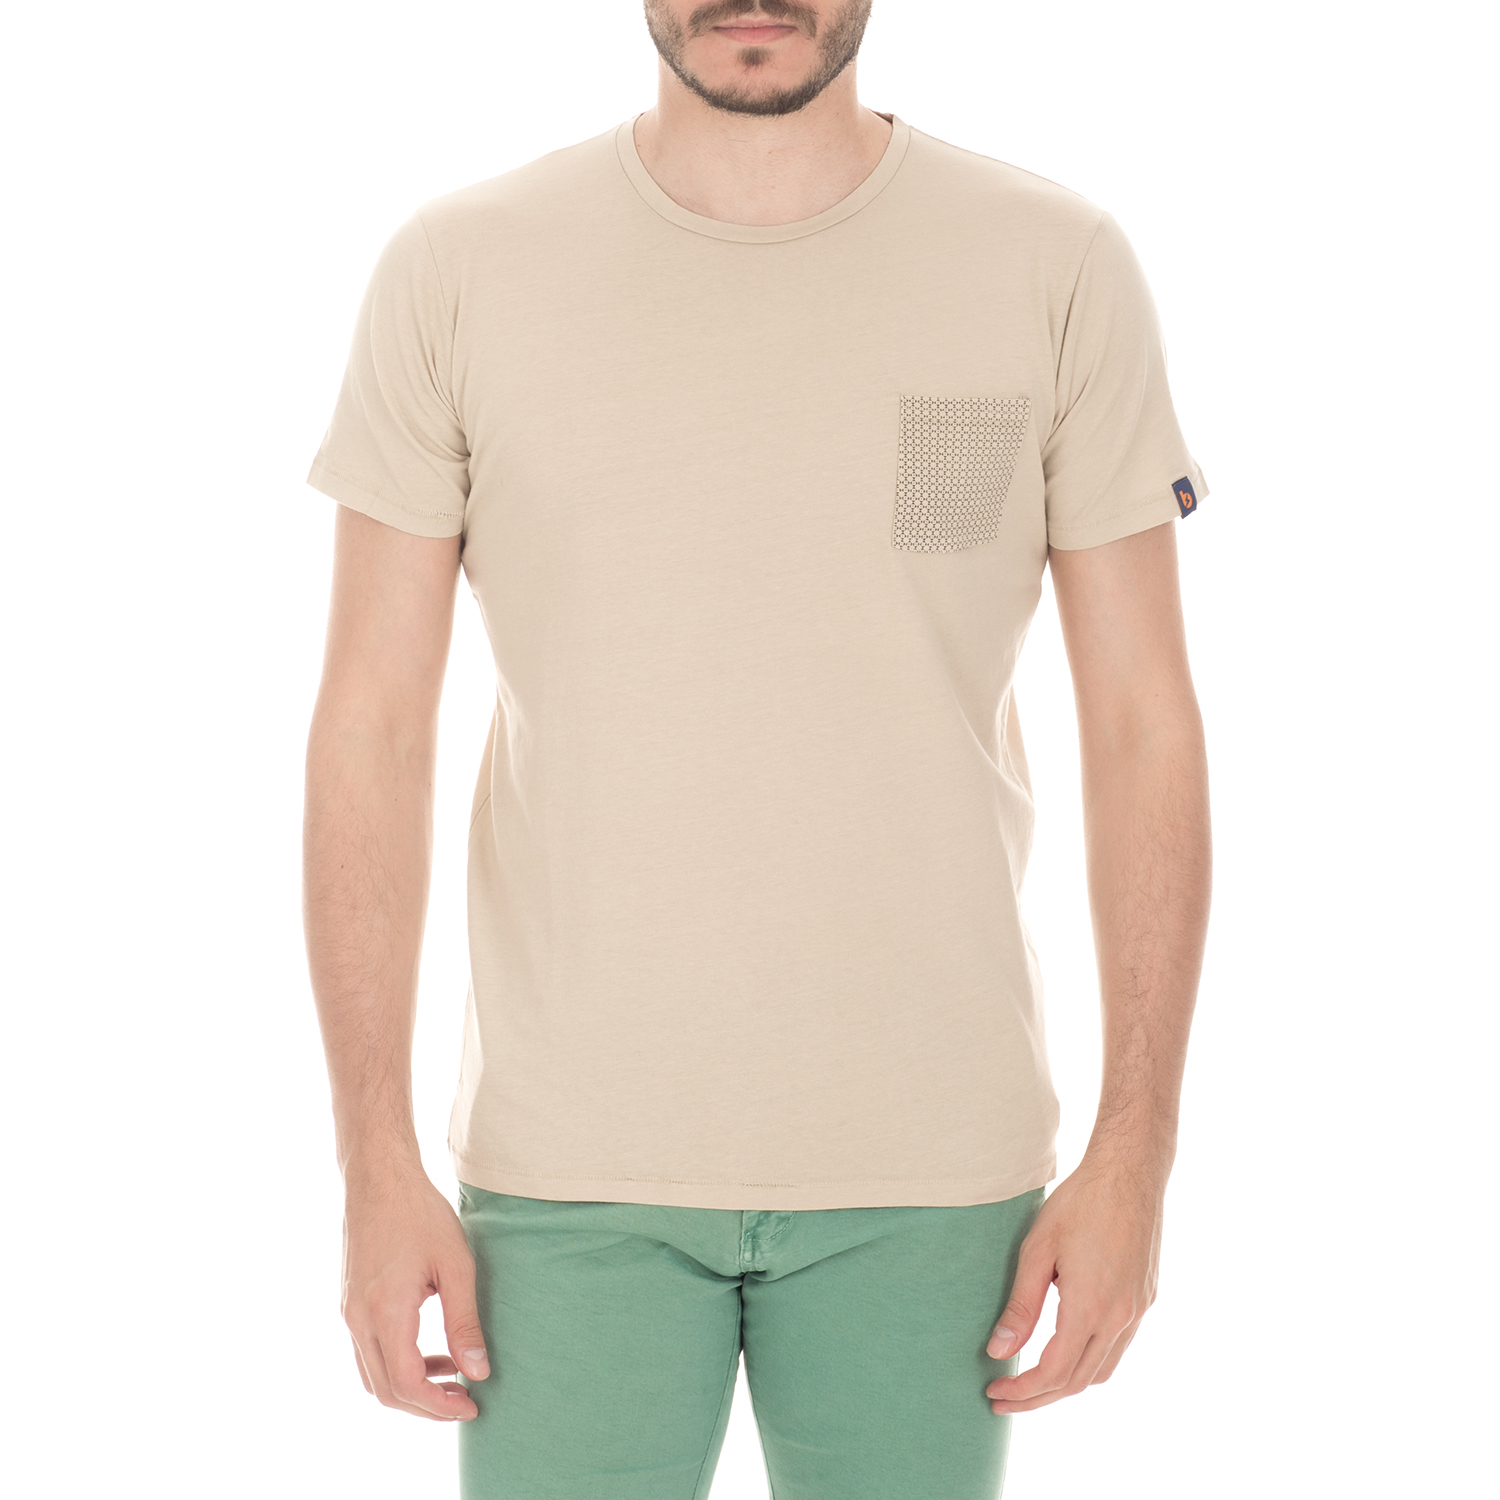 Ανδρικά/Ρούχα/Μπλούζες/Κοντομάνικες BATTERY - Ανδρική μπλούζα BATTERY μπεζ